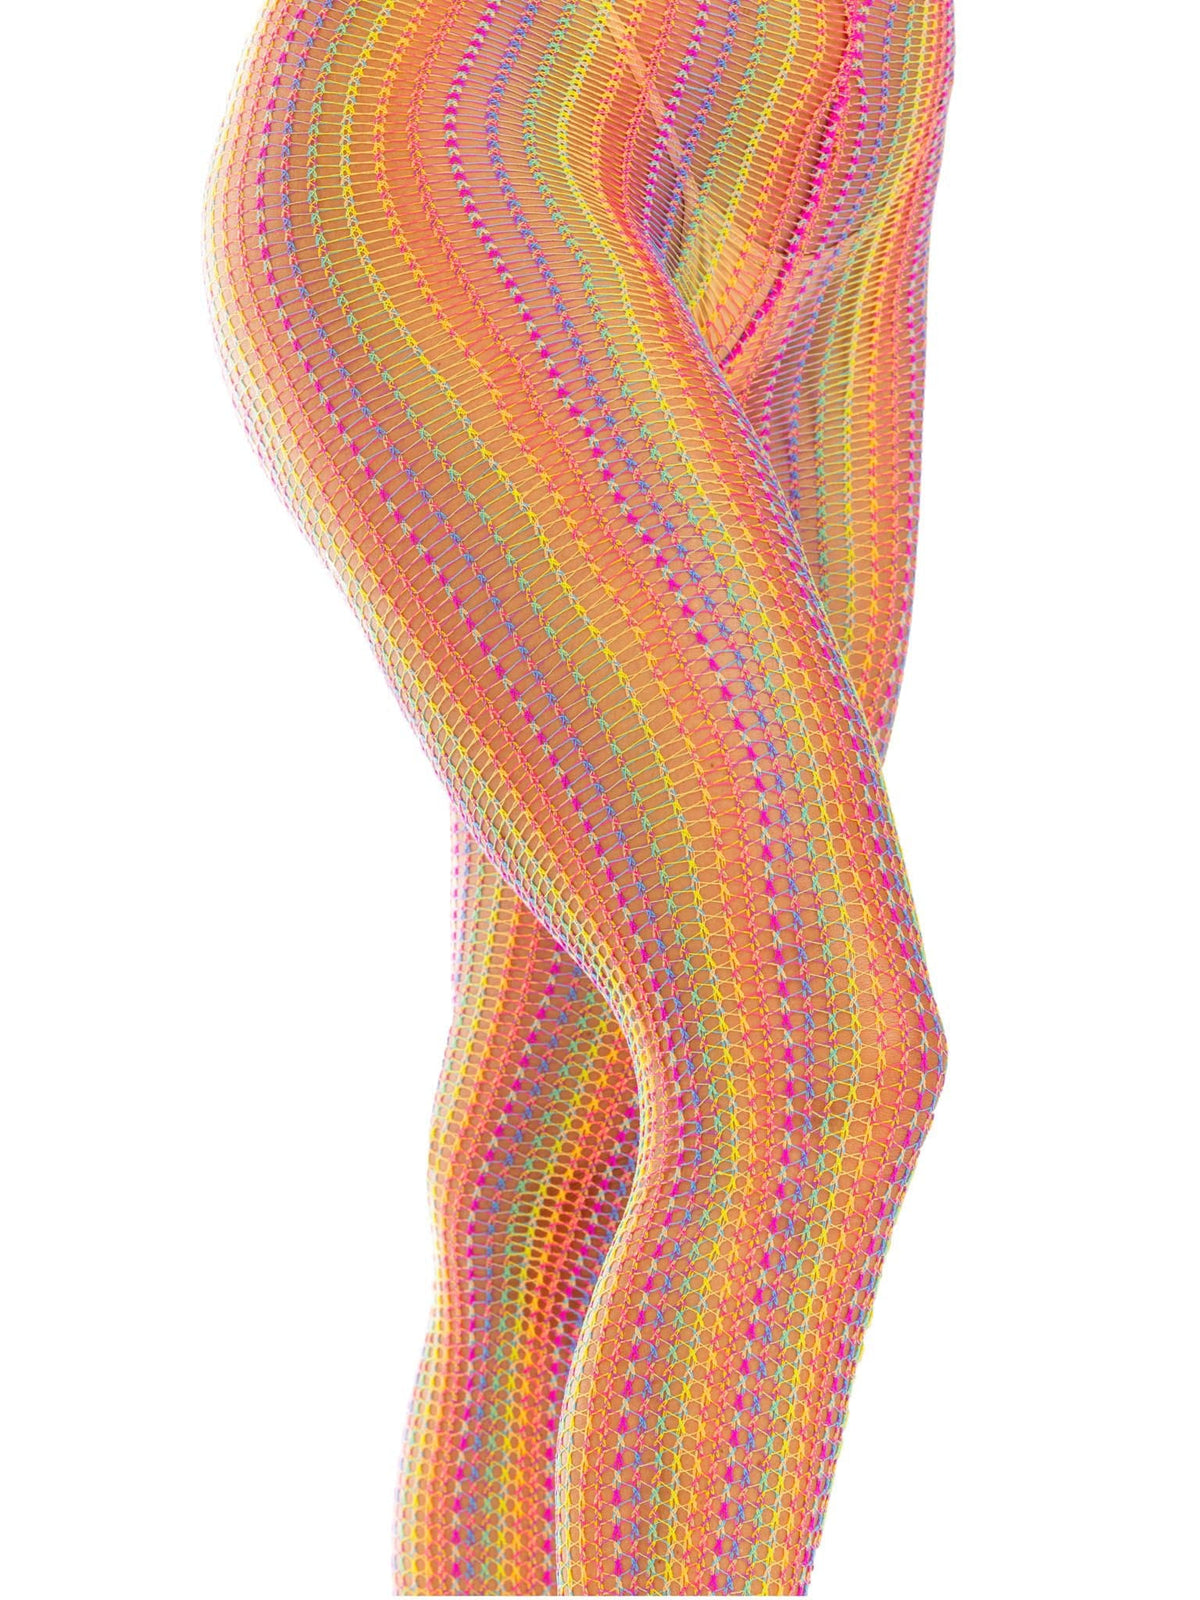 Medias de red de crochet arcoíris - Talla única - Multicolor